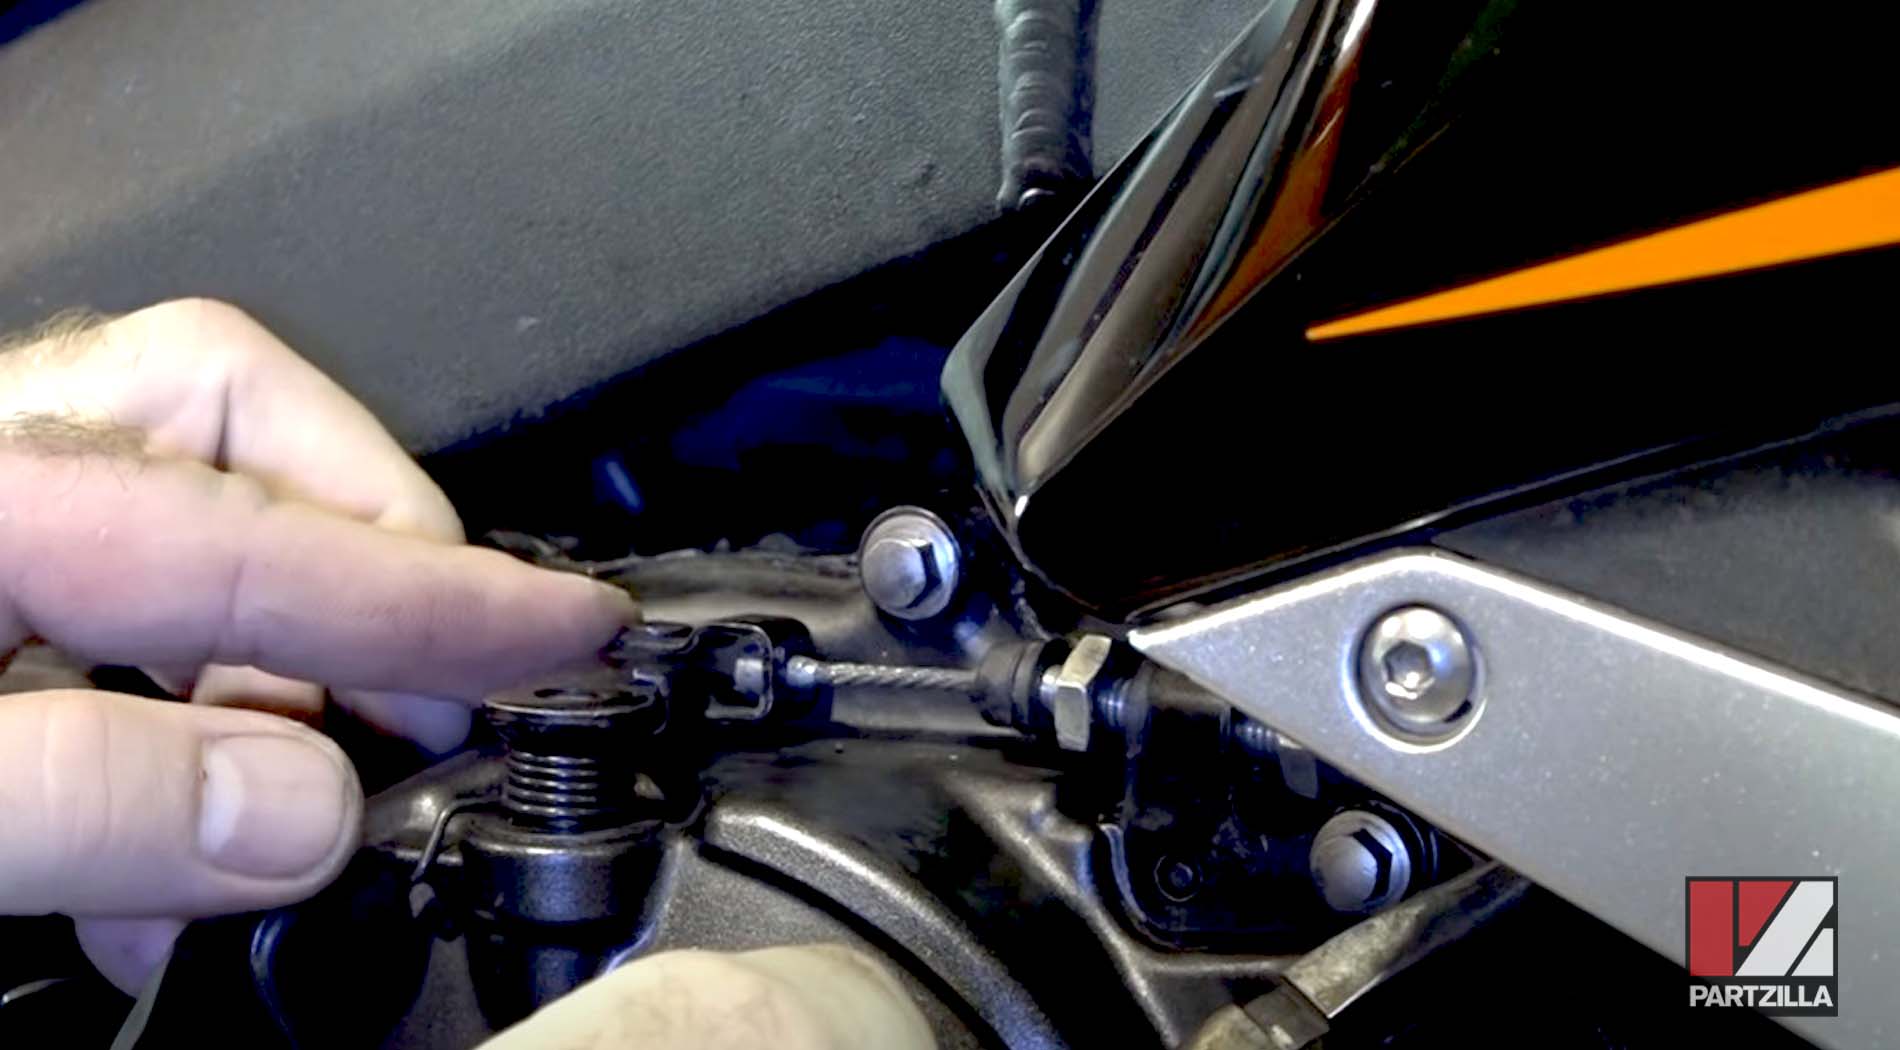 Honda CBR 600 clutch cable adjustment